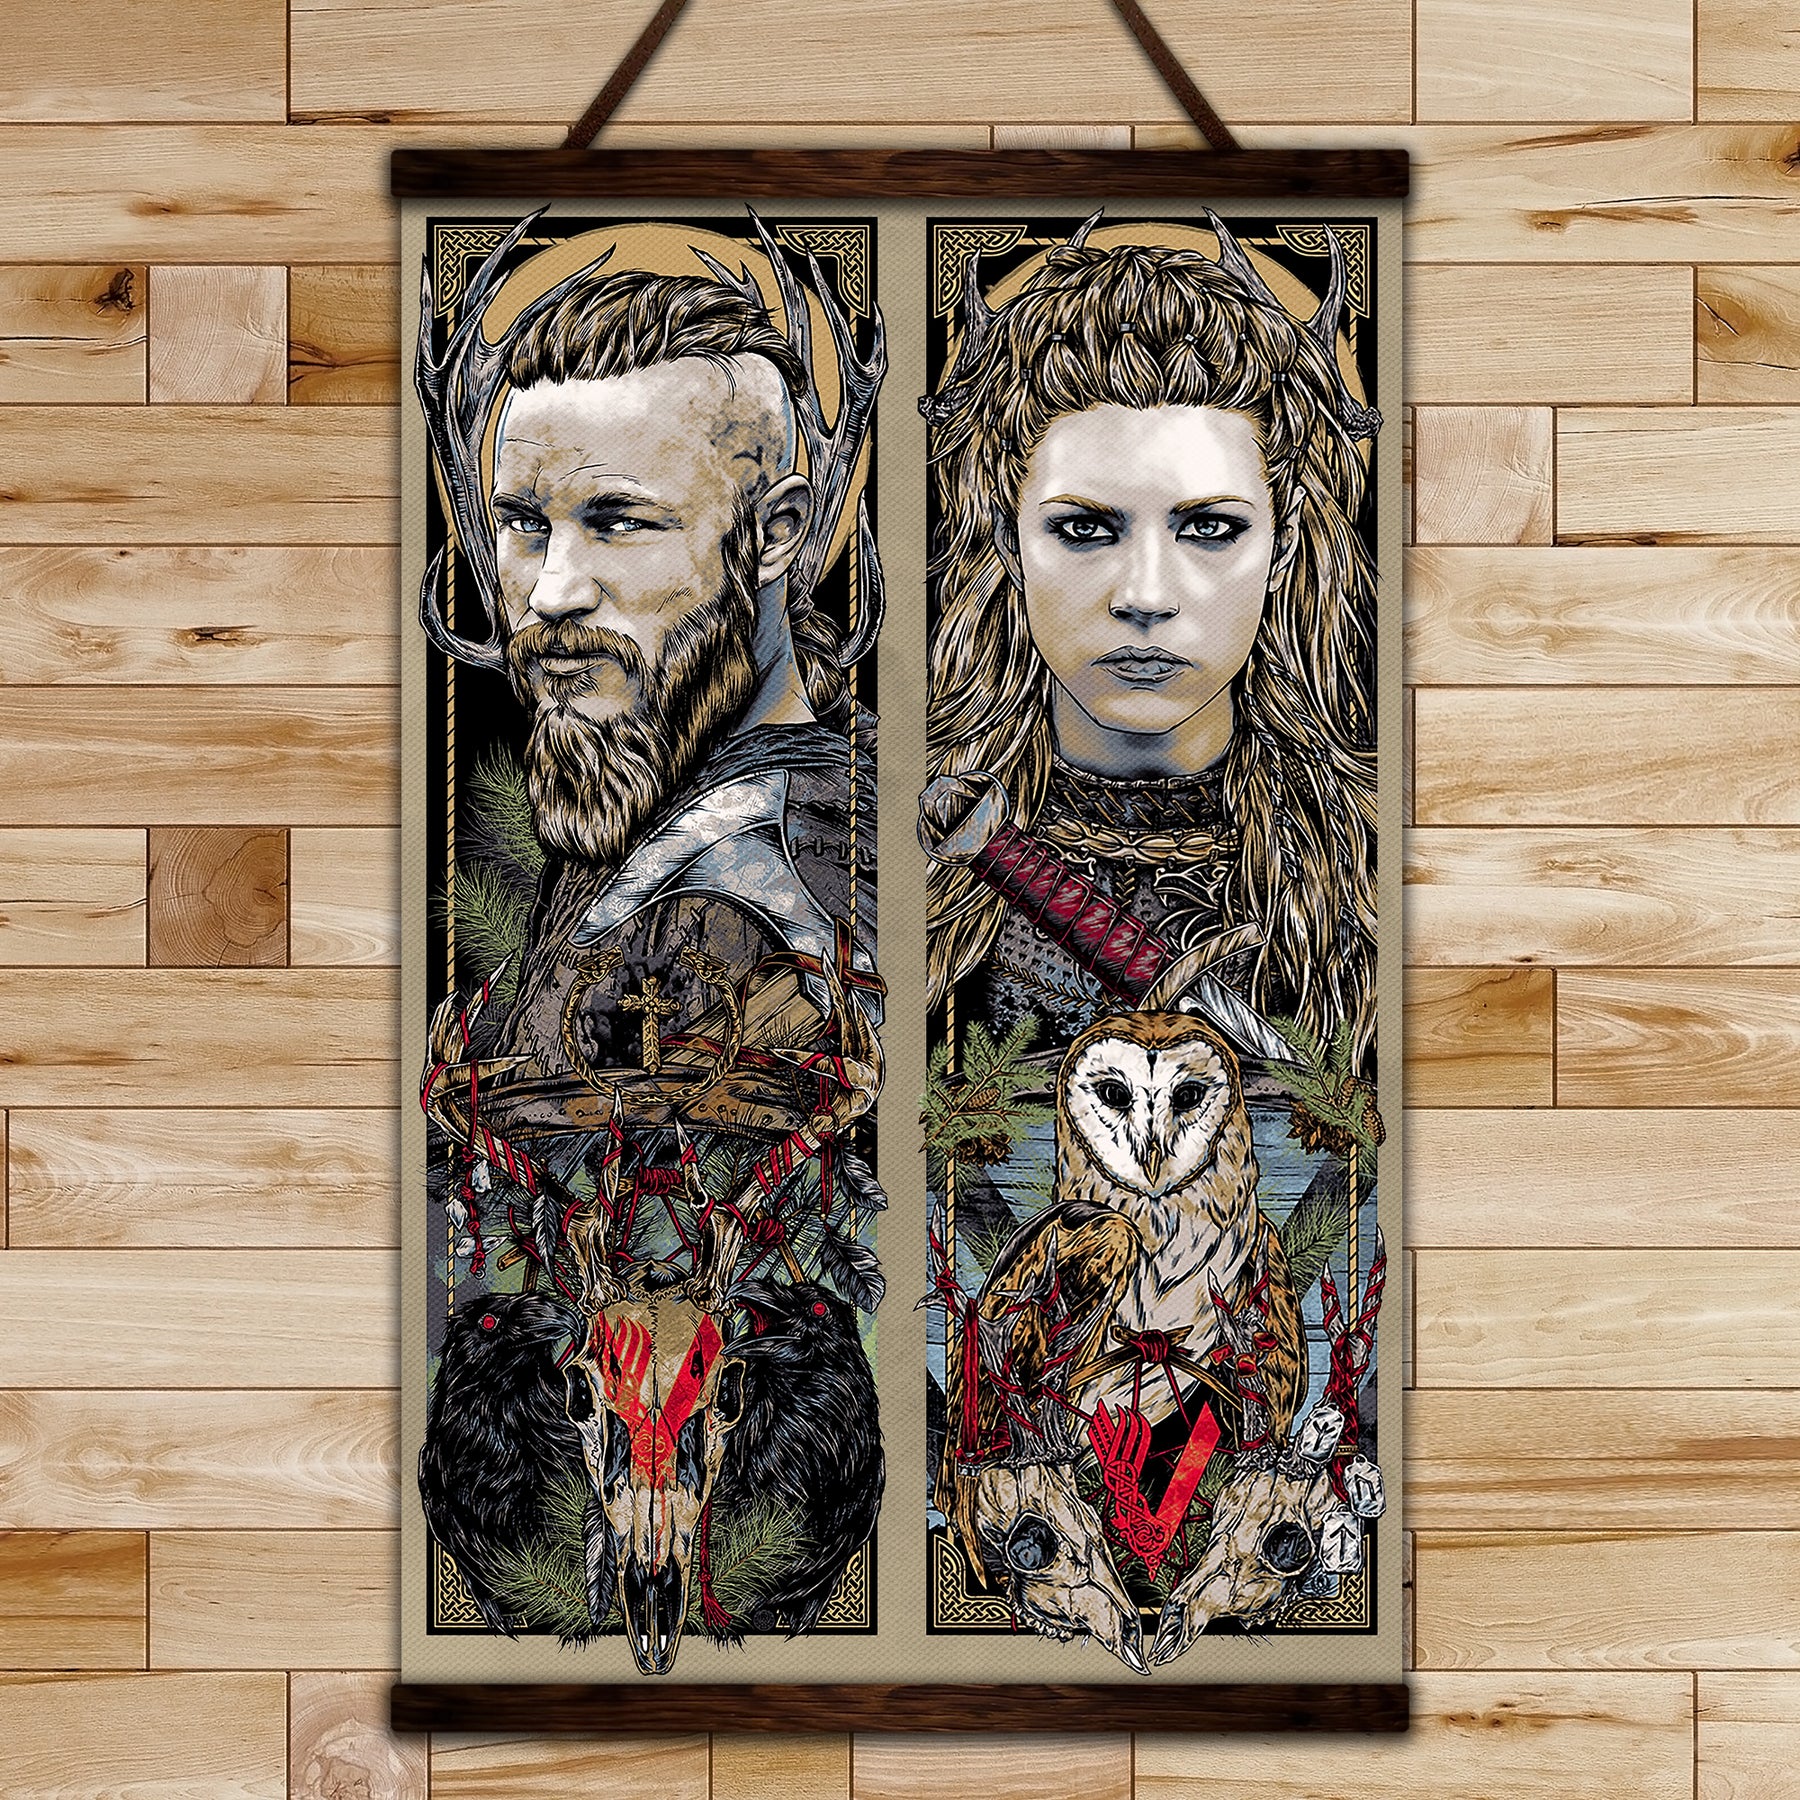 VK005 - Ragnar & Lagertha - Viking Poster